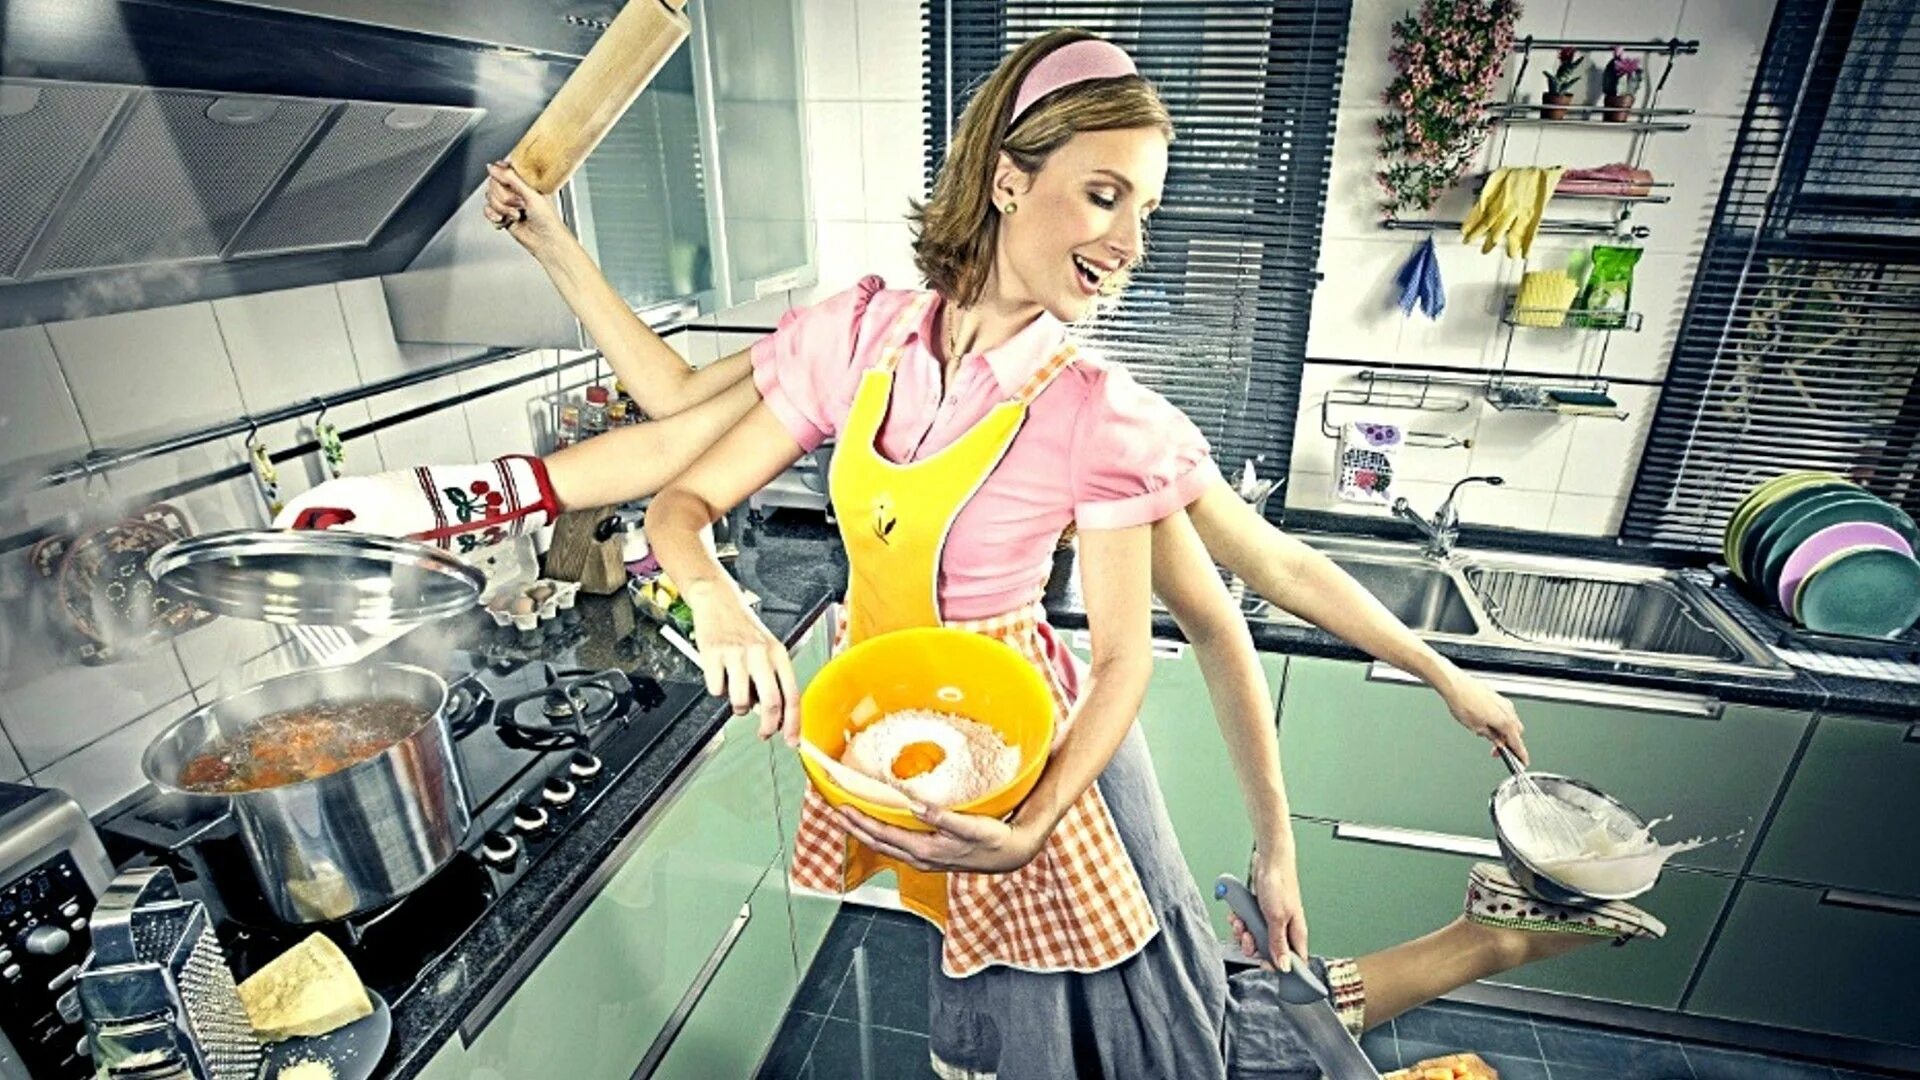 Я хозяйка этой жизни 135. Женщина домохозяйка. Кухня. Домохозяйка со стажем. Примерная жена.